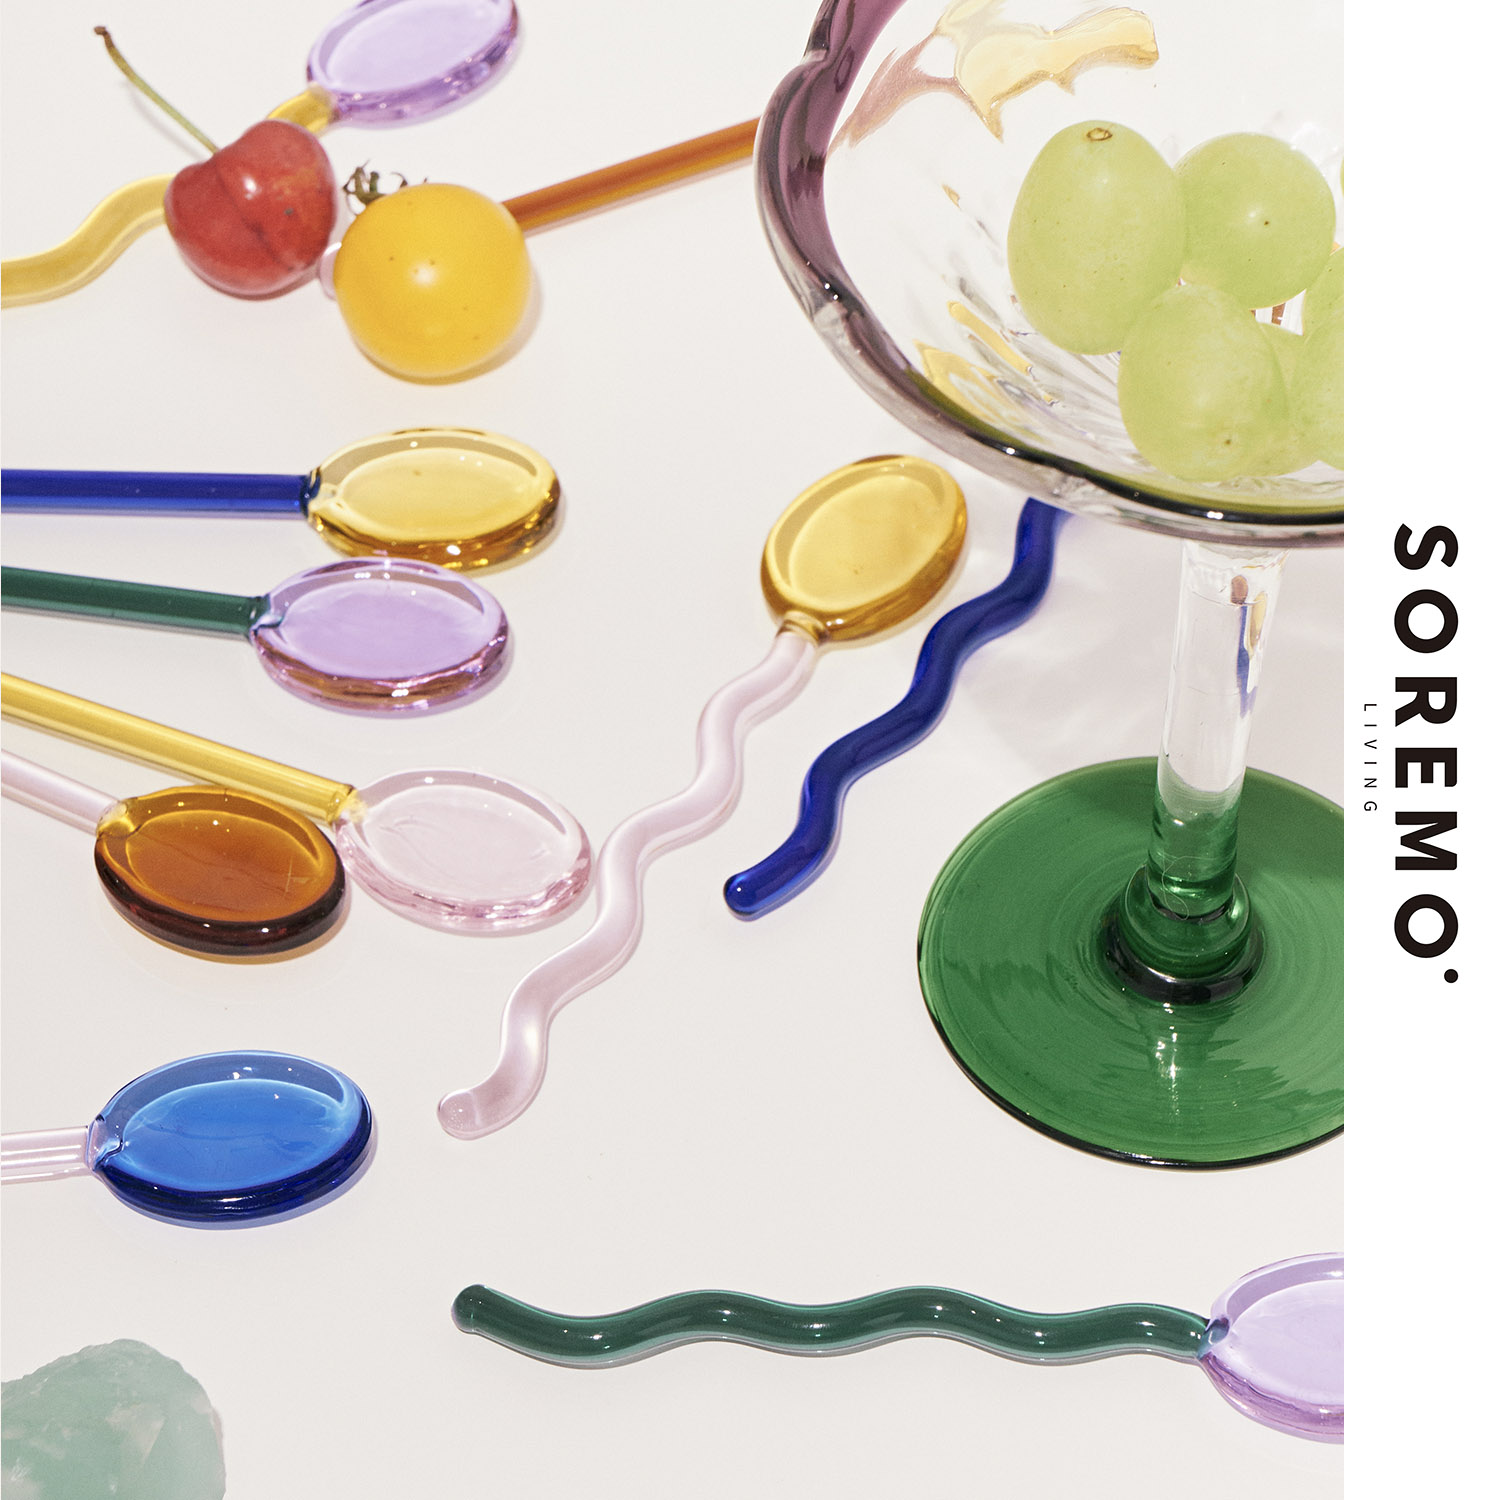 SOREMO 专利设计糖果玻璃勺子环保彩色搅拌勺可爱咖啡勺ins甜品勺 - 图2